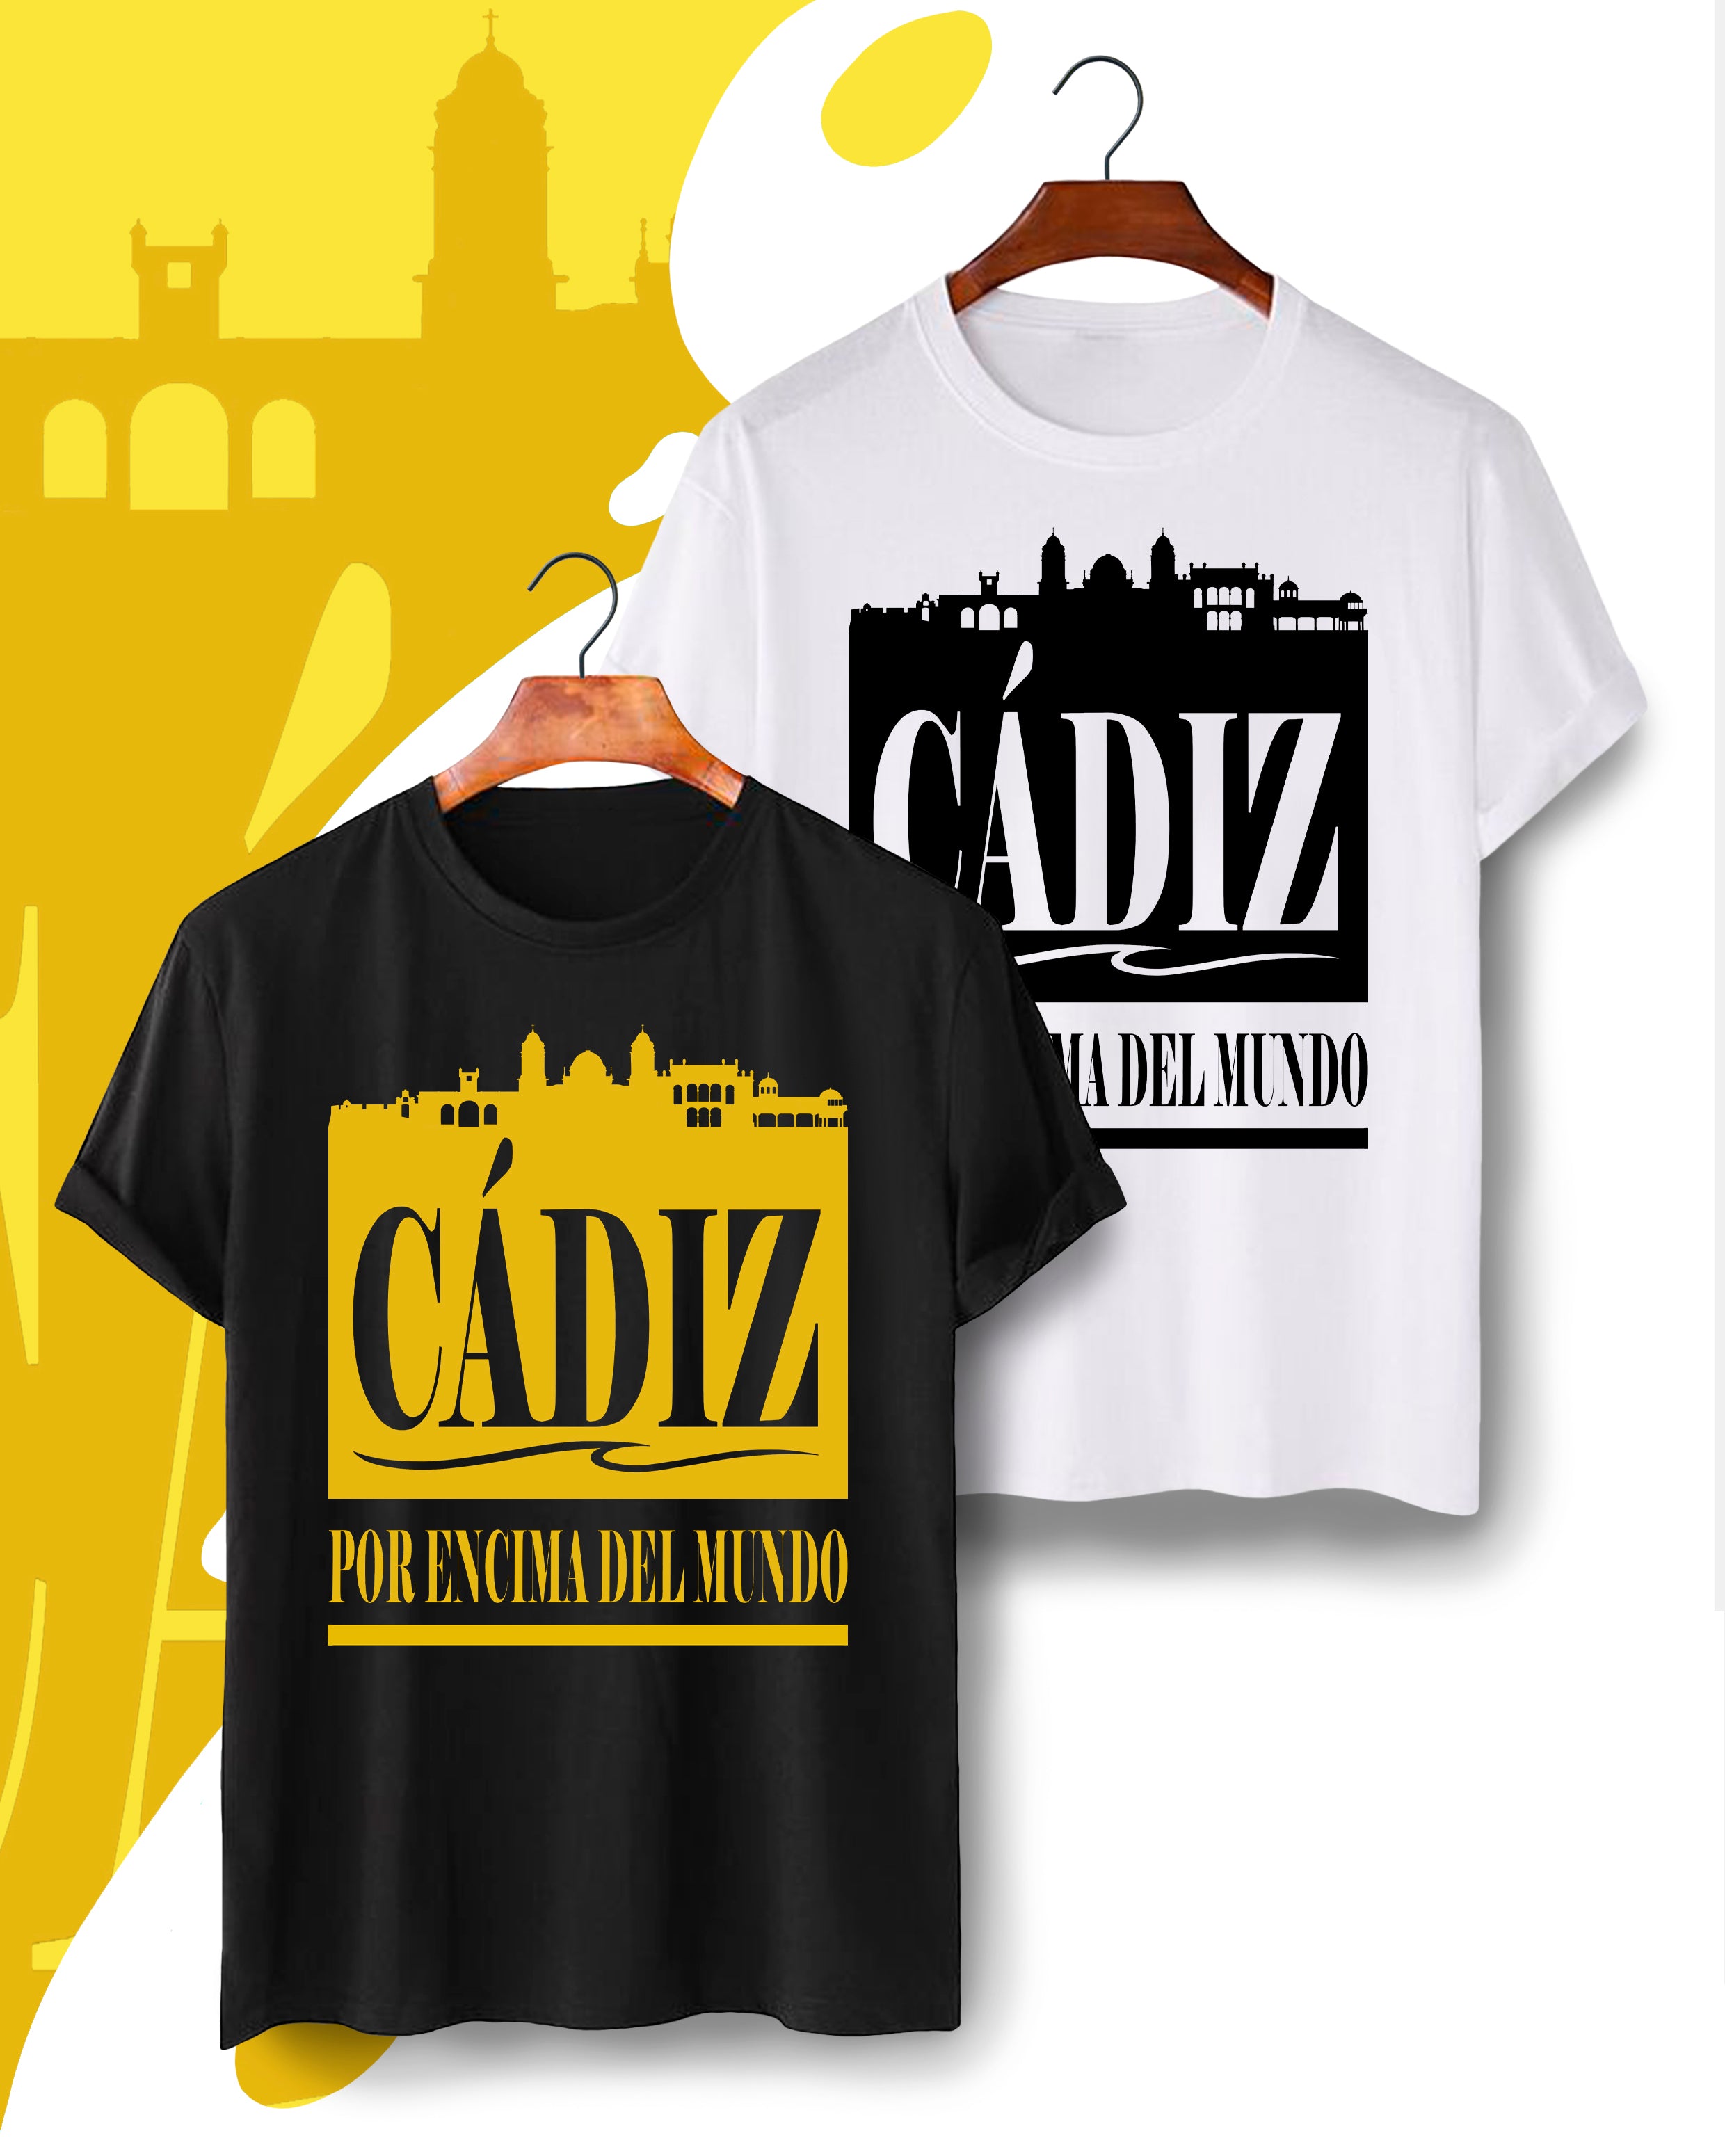 Camiseta de Cadiz para los amantes de la costa Gaditana